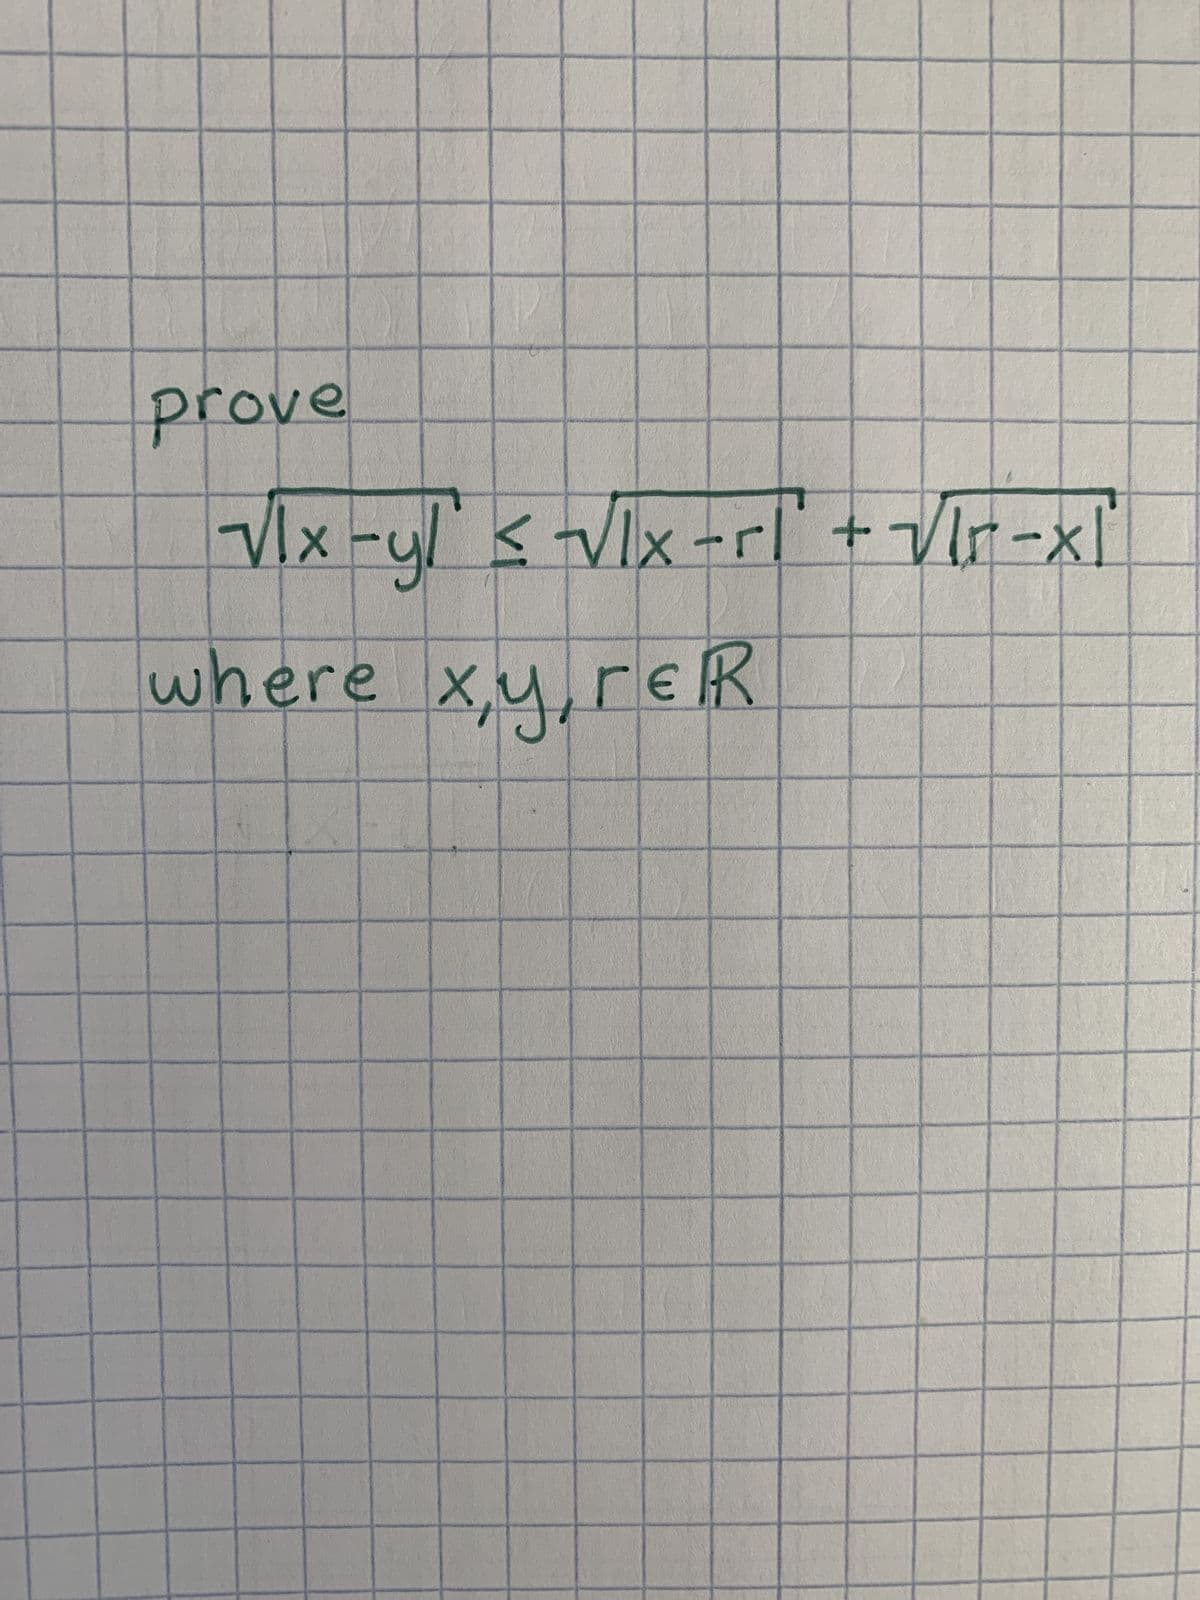 prove
Vlx-yl ≤ √lx -rl + √lr=x["
where x,y,rER